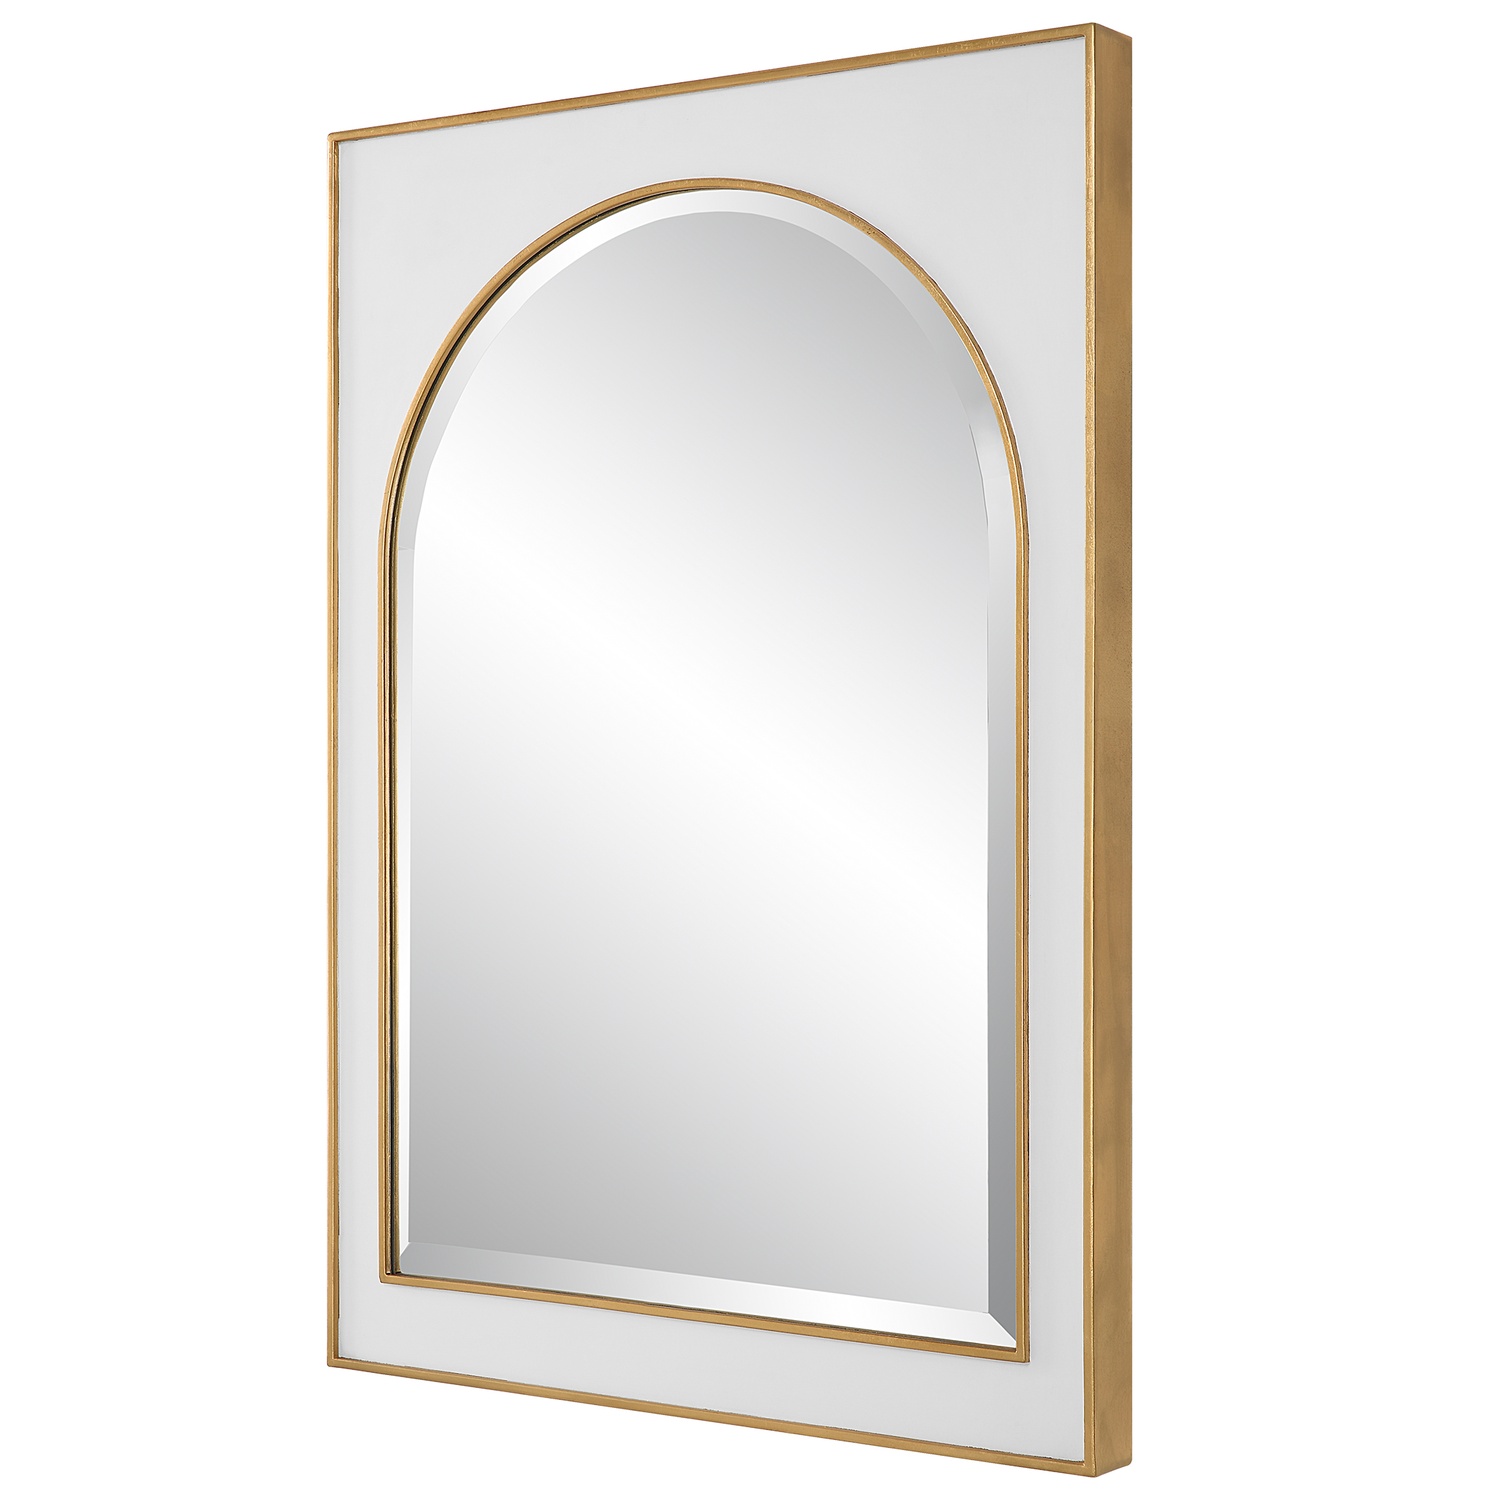 Crisanta-Arch Mirror